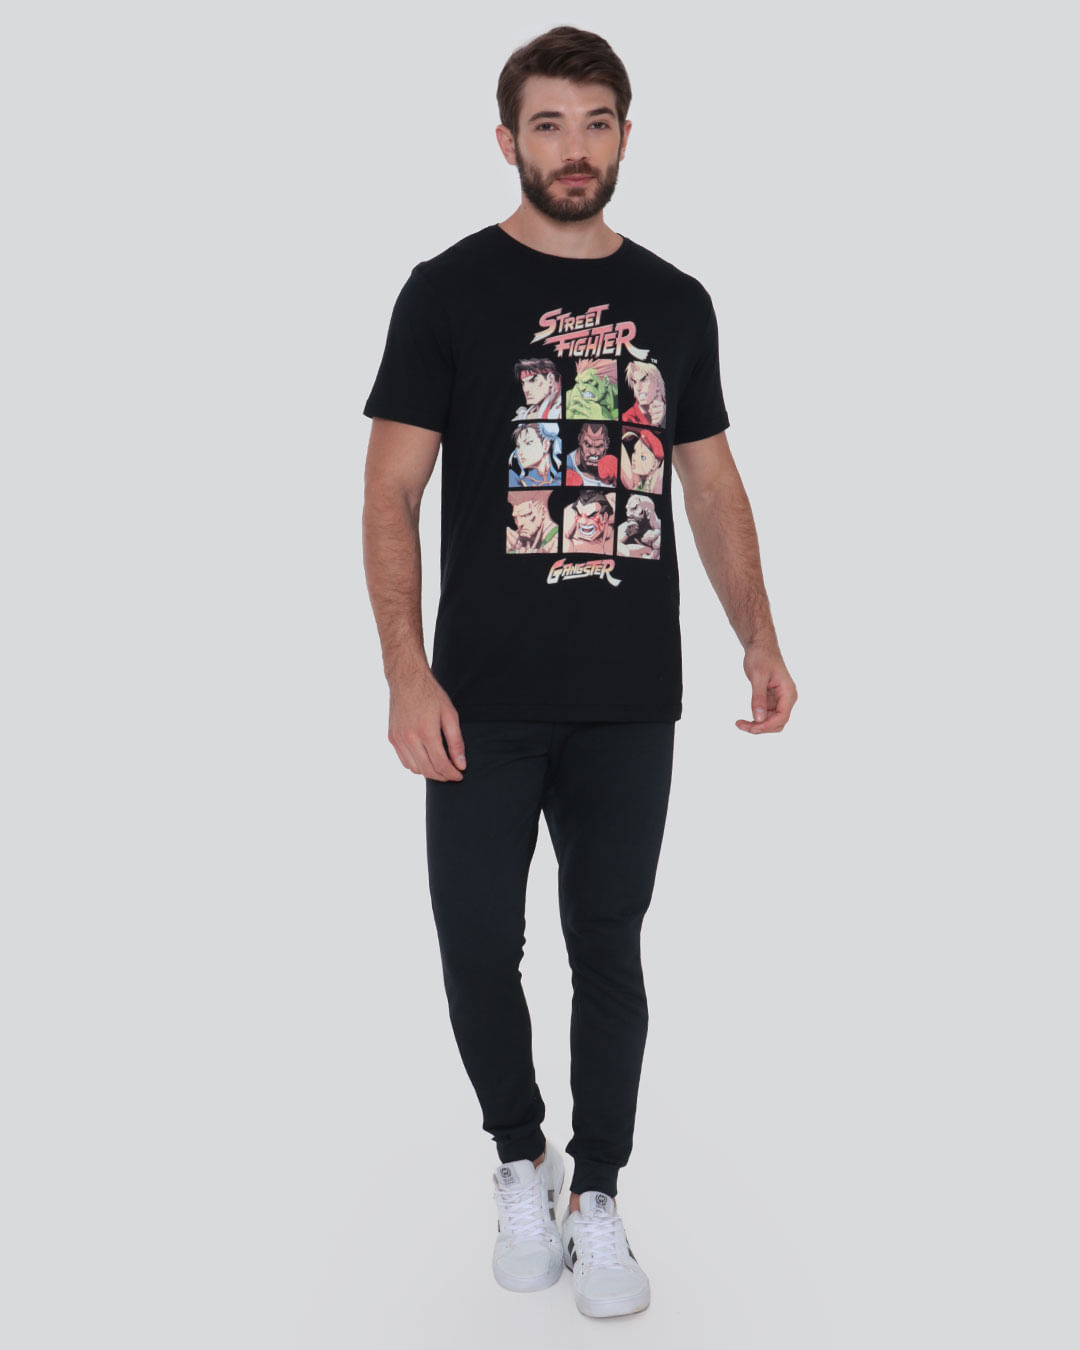 Camisa Super Camiseta Street Fighter Zangief em Promoção na Americanas